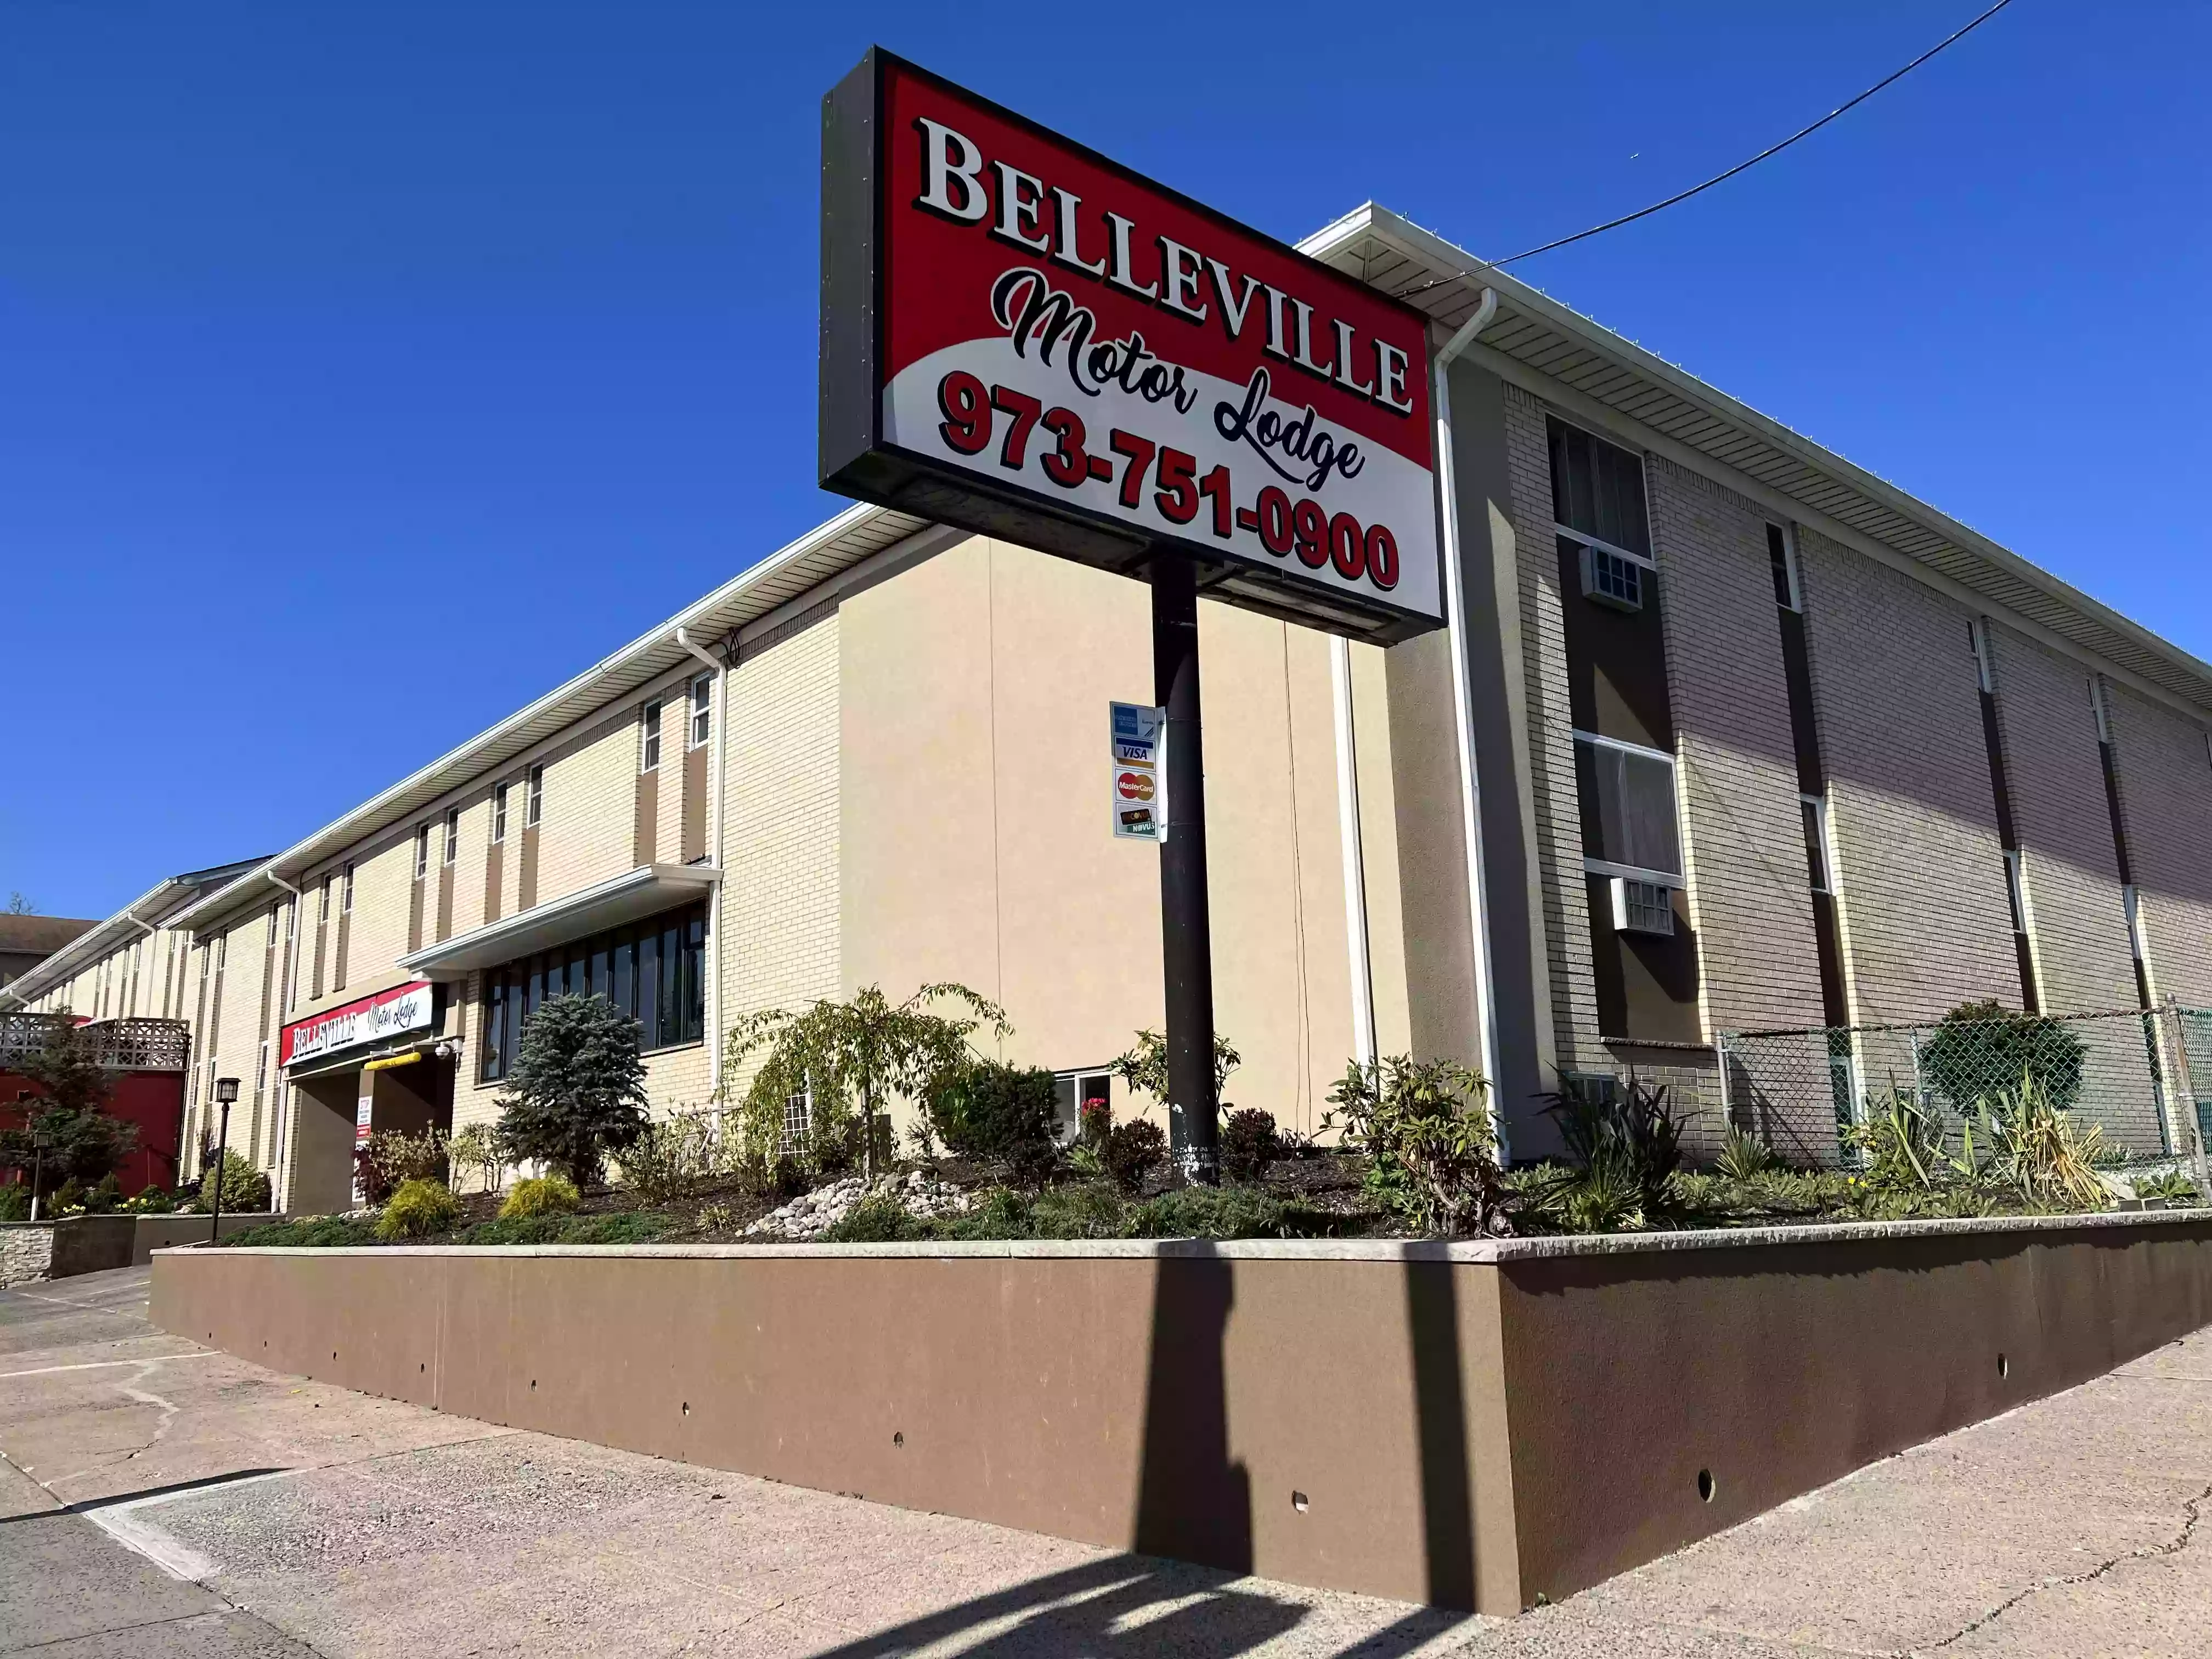 Belleville Motor Lodge